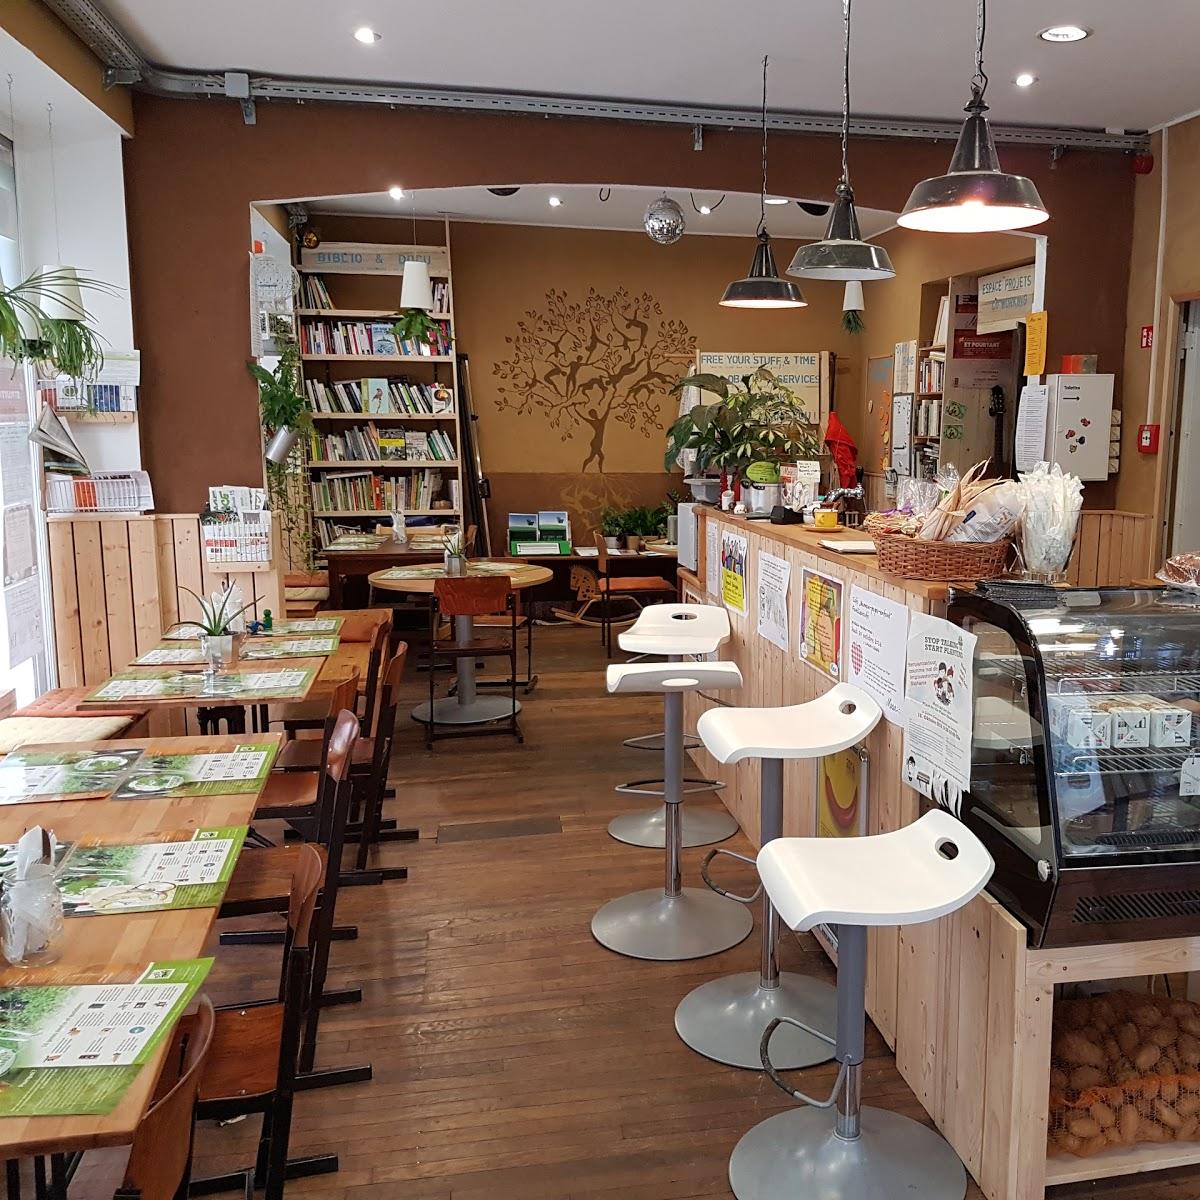 Restaurant "MESA, la Maison de la Transition à Esch" in Esch-sur-Alzette